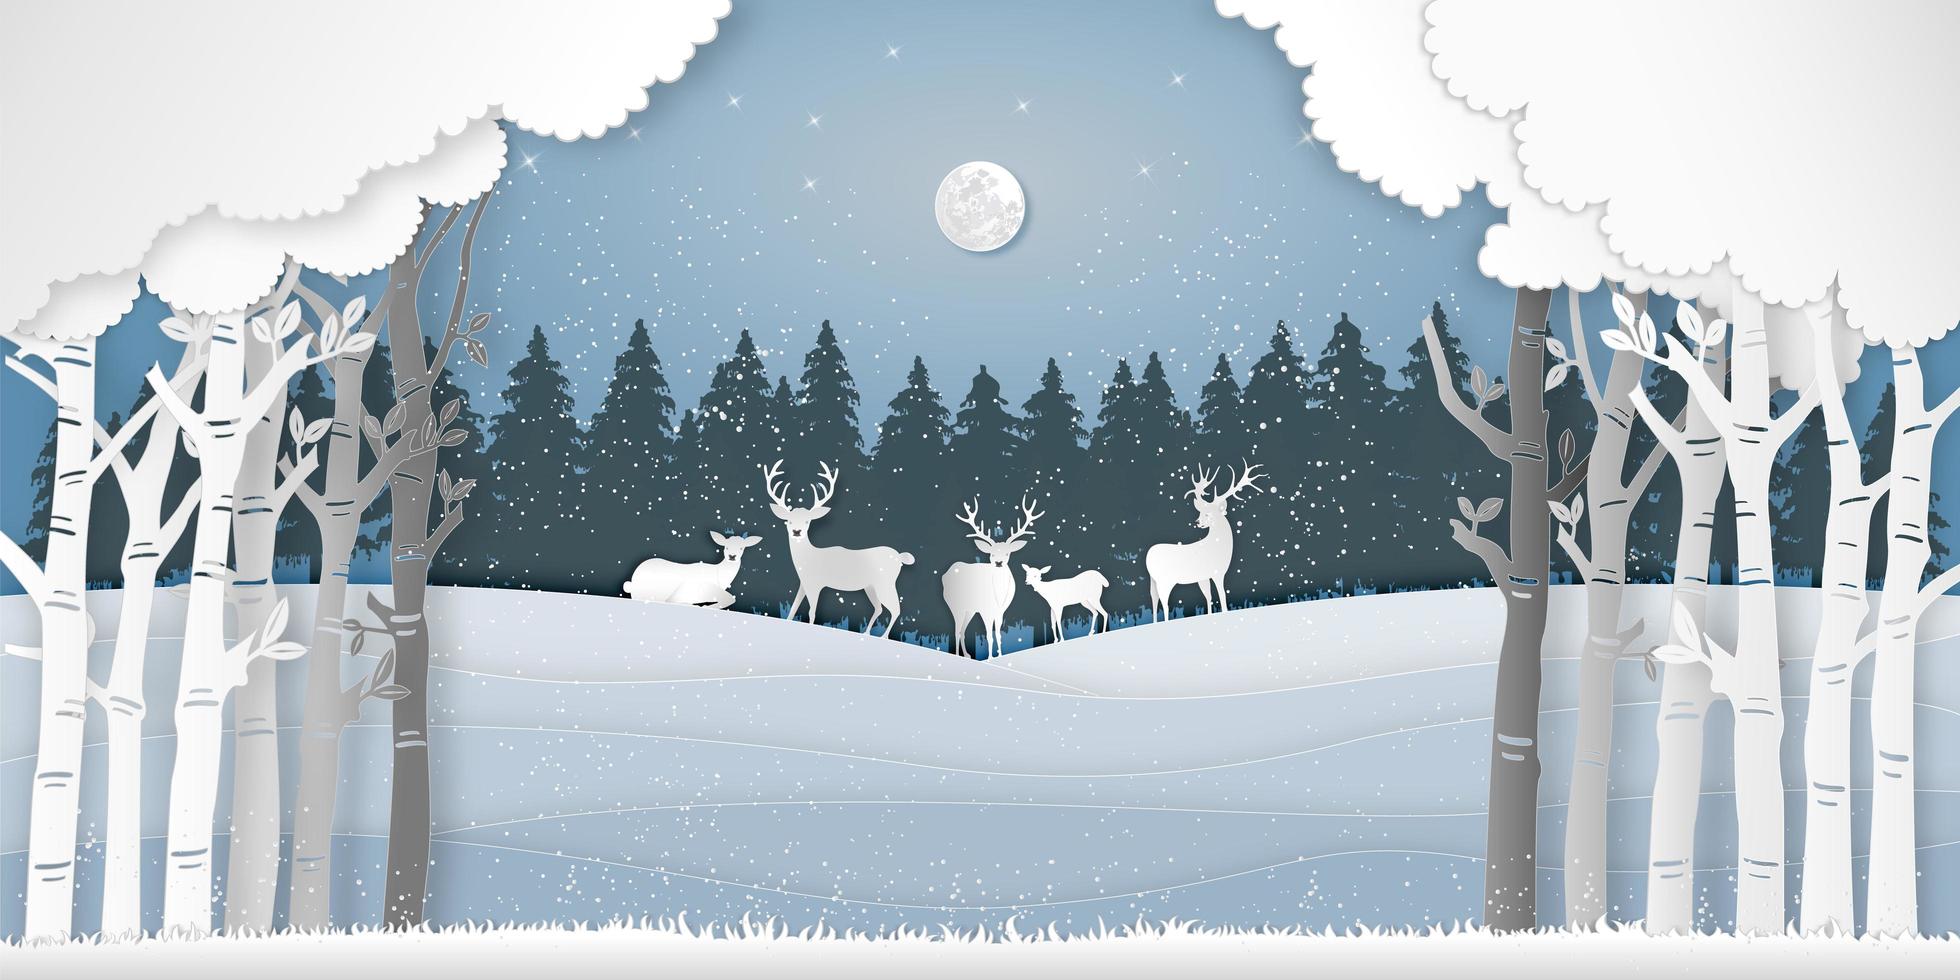 Paper art style deers in winter forest scene vector